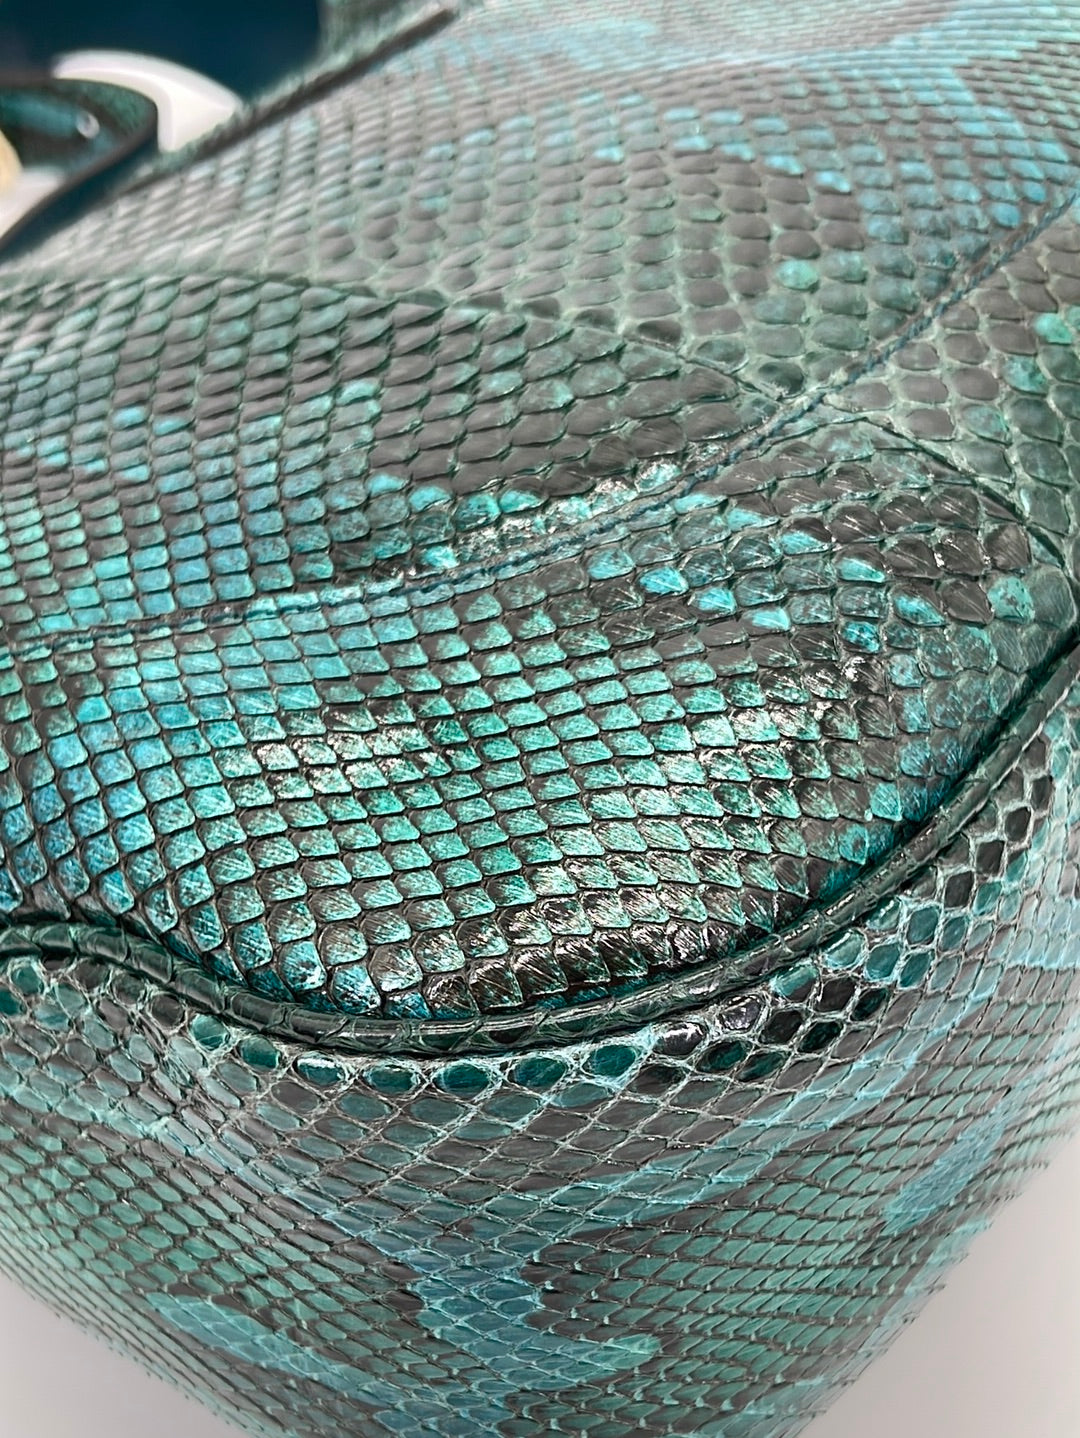 PRELOVED Gucci Large Emerald Green Python Jackie O Hobo Shoulder Bag 2 –  KimmieBBags LLC